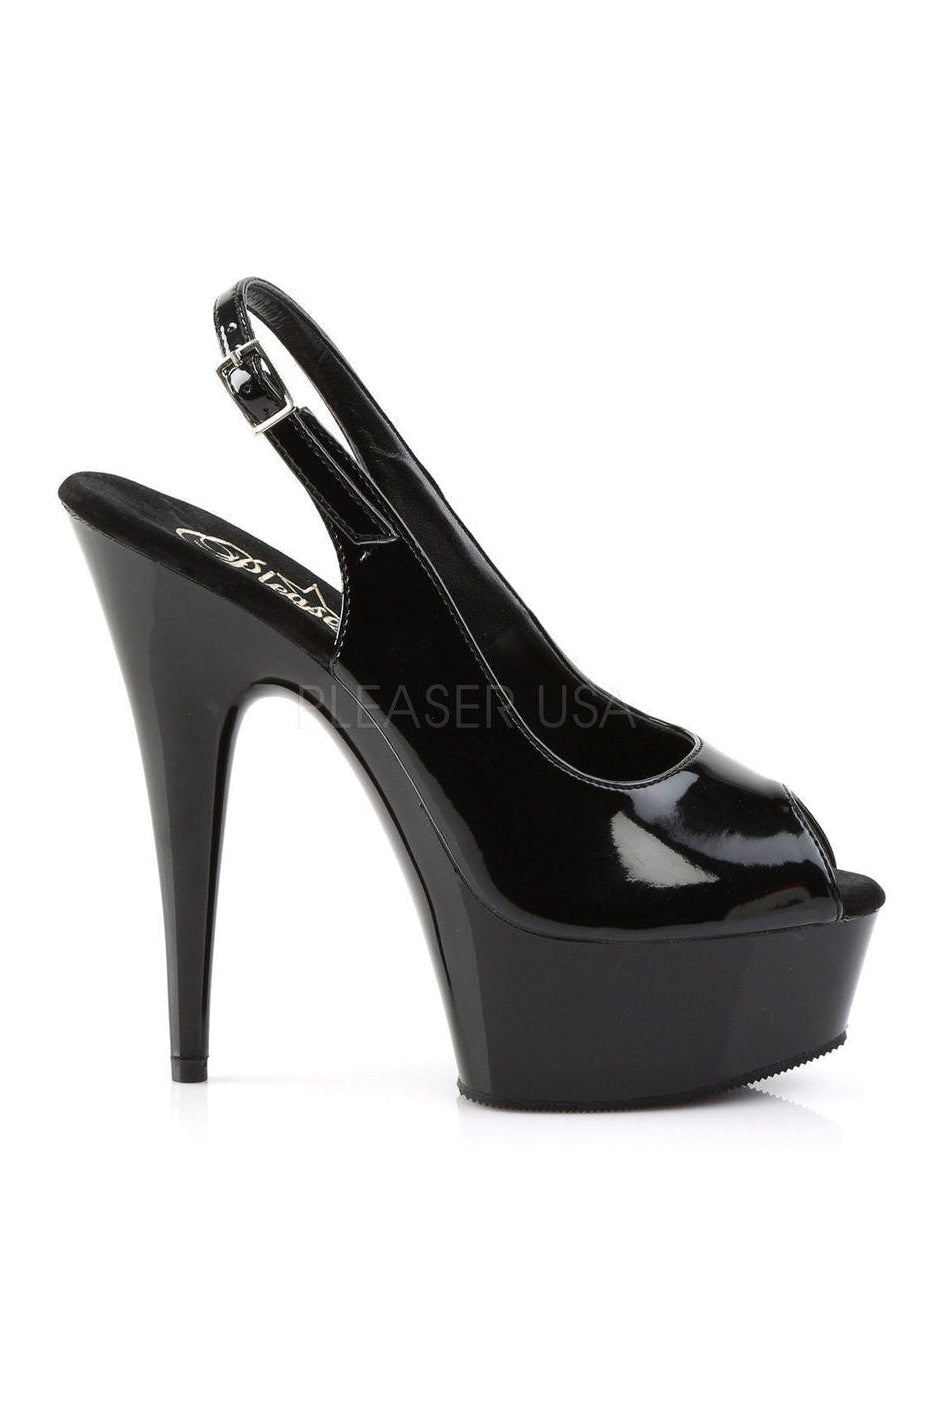 DELIGHT-654 Platform Sandal | Black Patent-Pleaser-Sandals-SEXYSHOES.COM